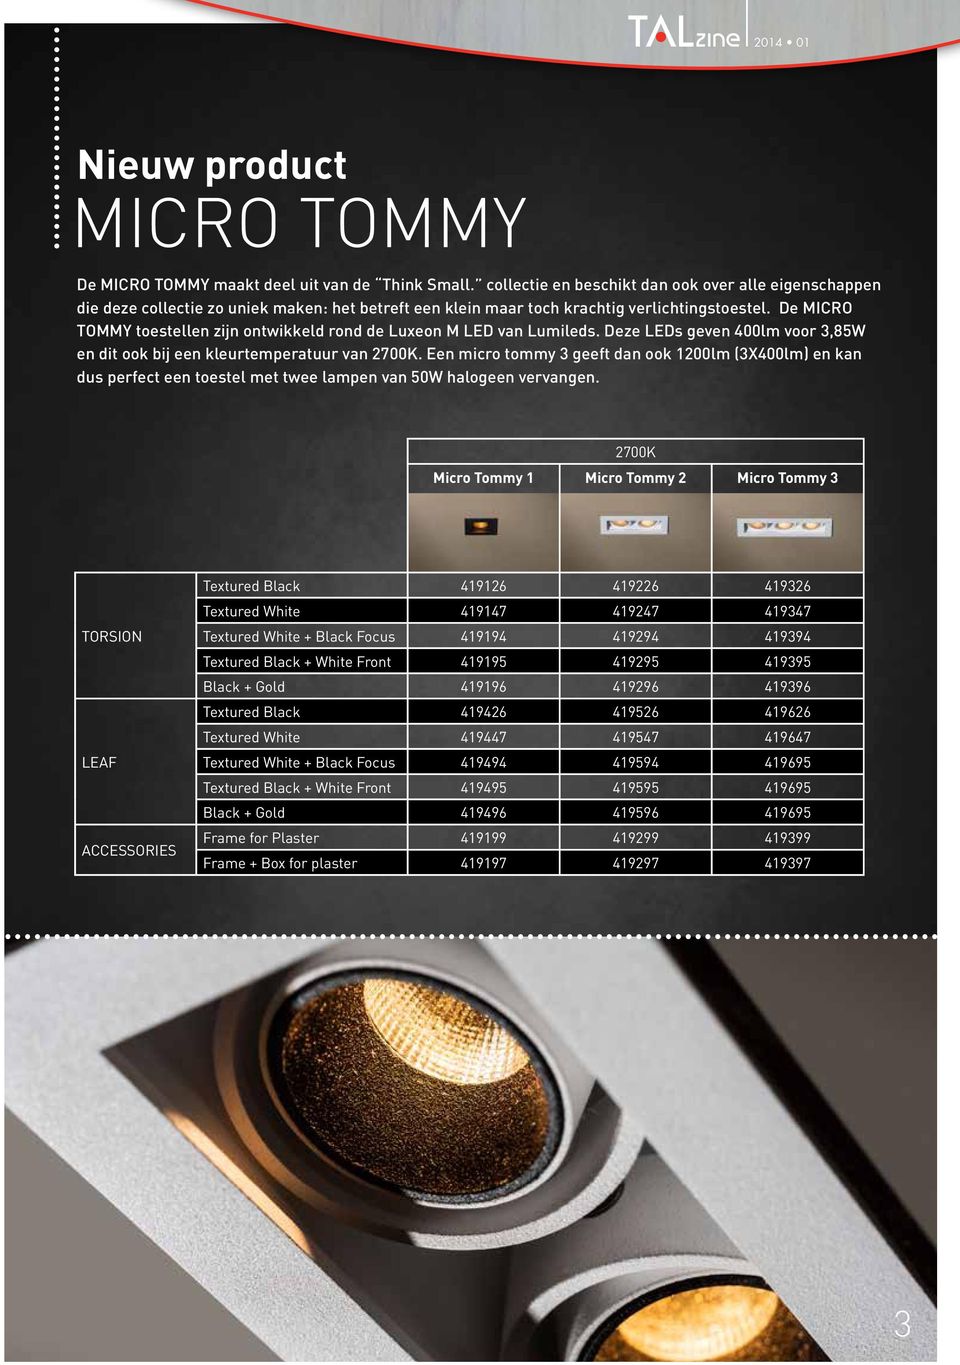 De MICRO TOMMY toestellen zijn ontwikkeld rond de Luxeon M LED van Lumileds. Deze LEDs geven 400lm voor 3,85W en dit ook bij een kleurtemperatuur van 2700K.